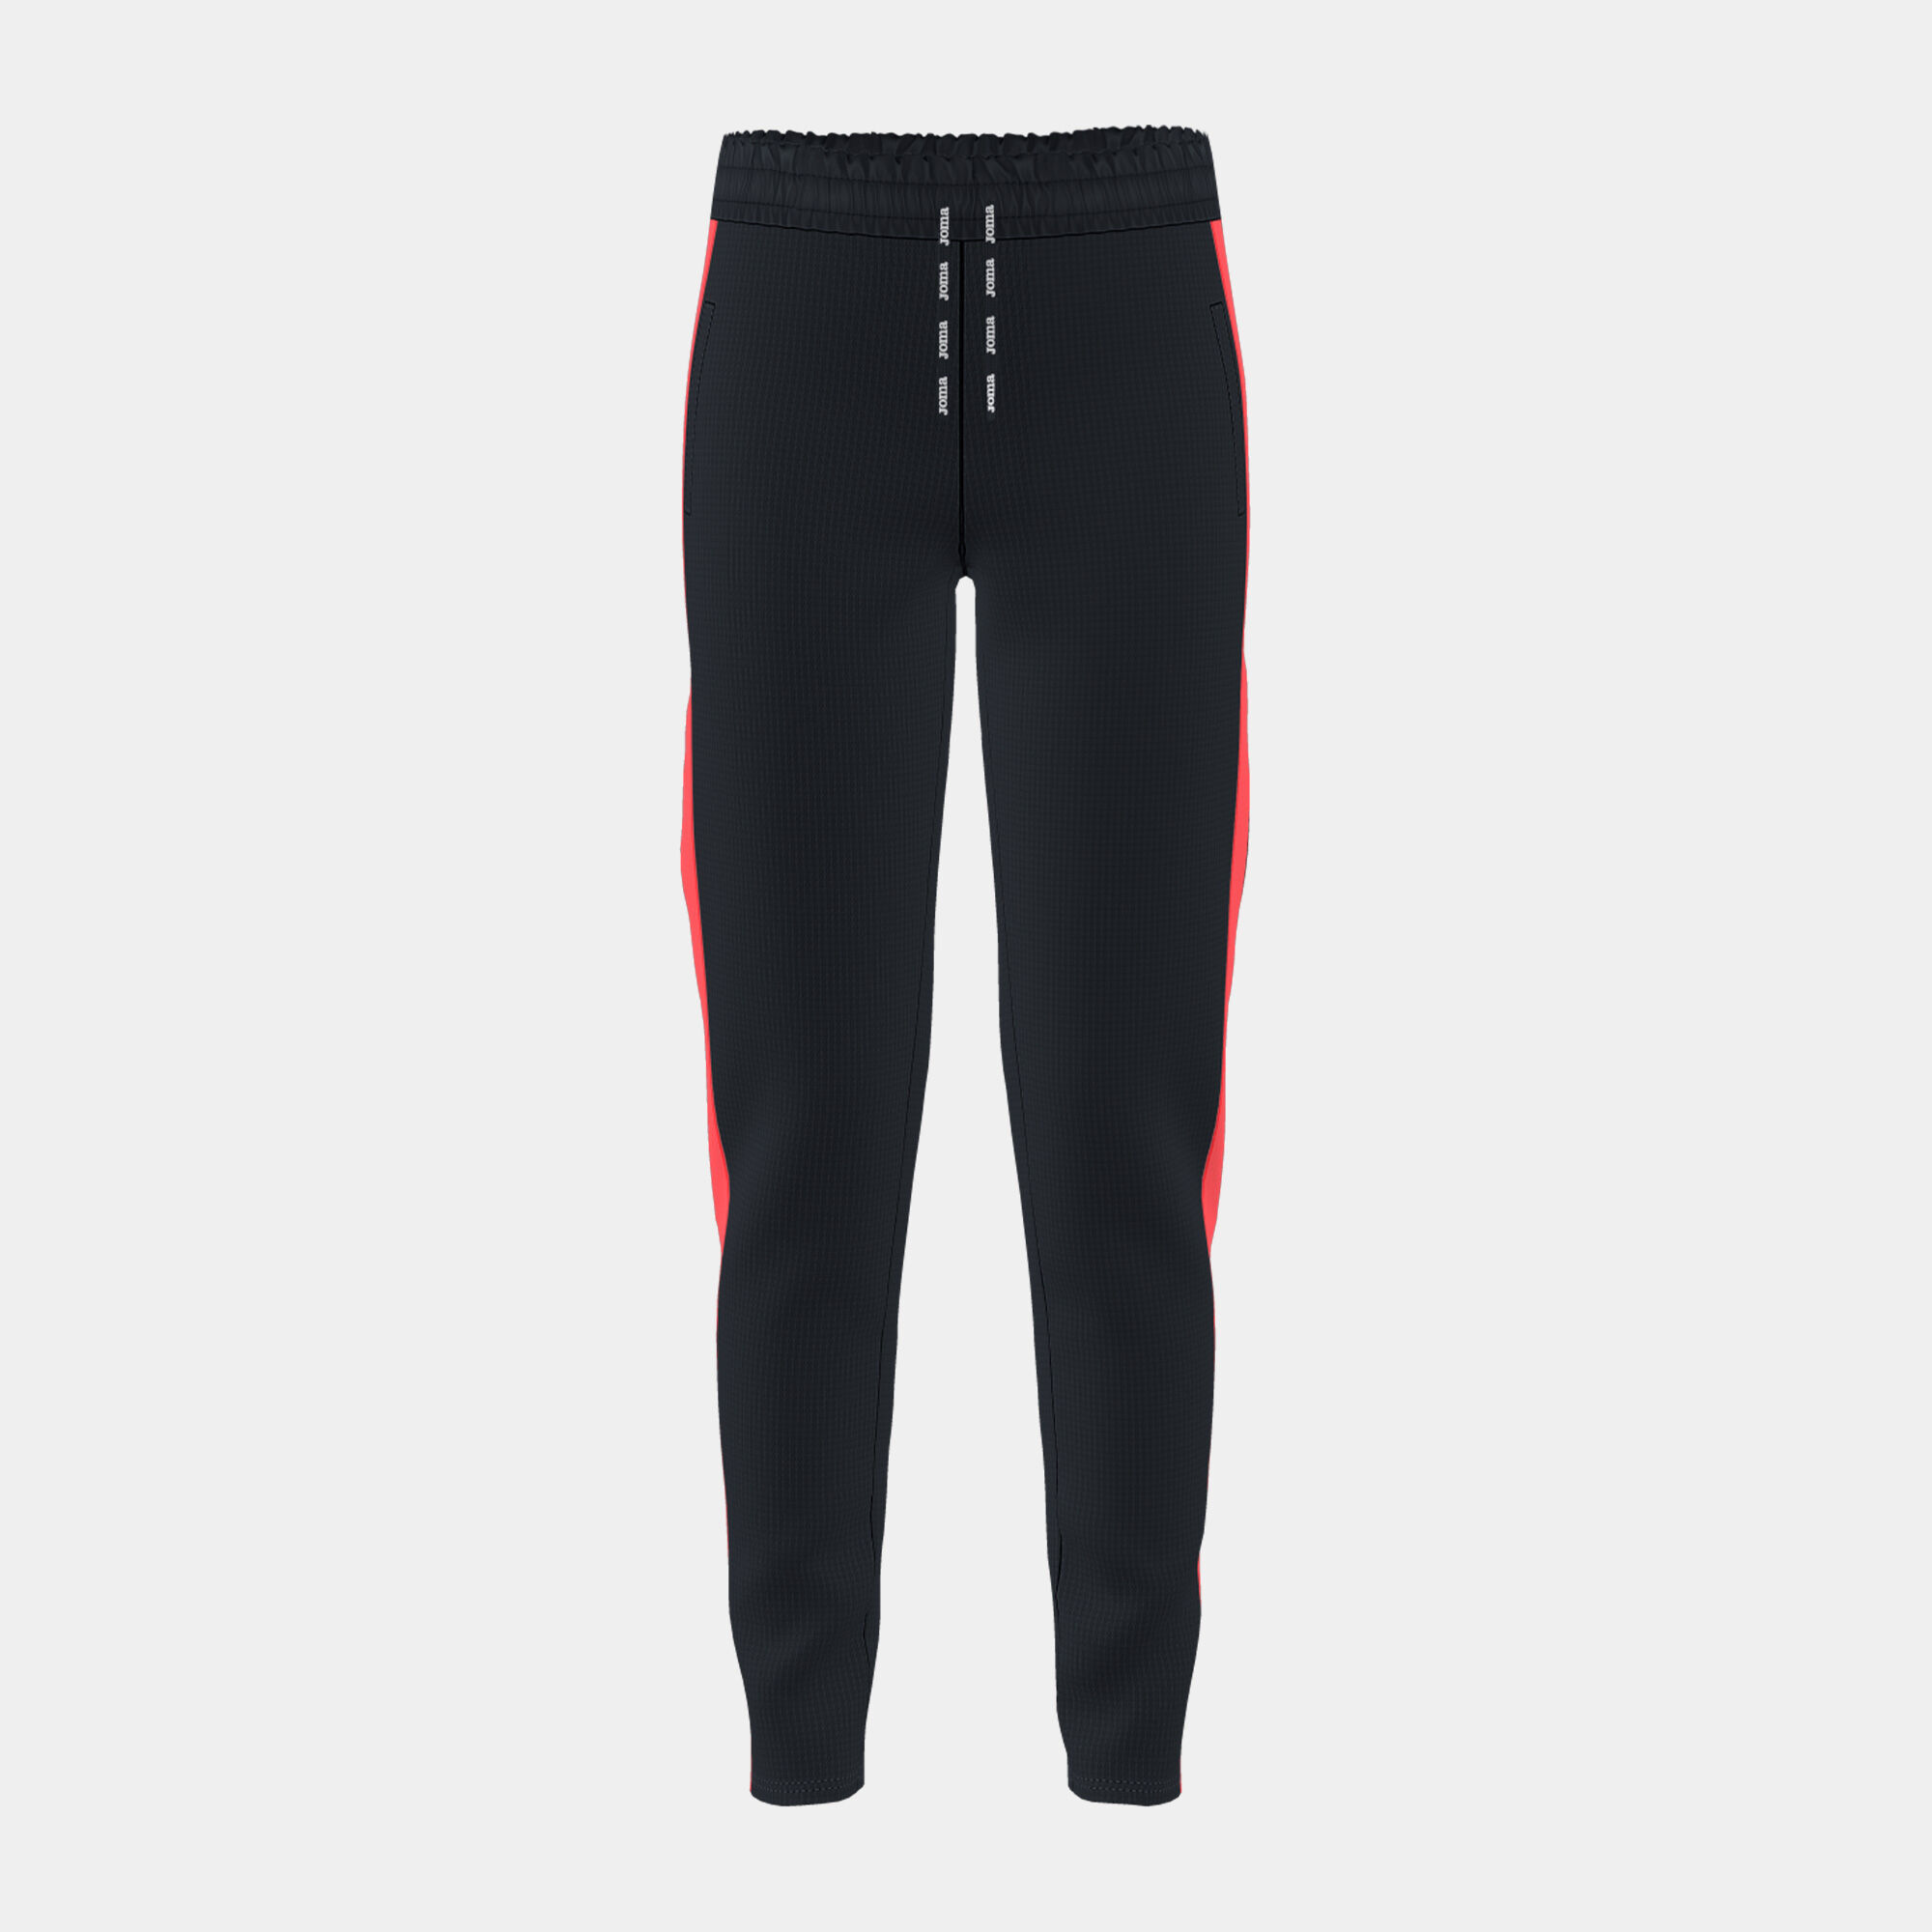 Pantalone lungo bambino Stripe nero corallo fluorescente